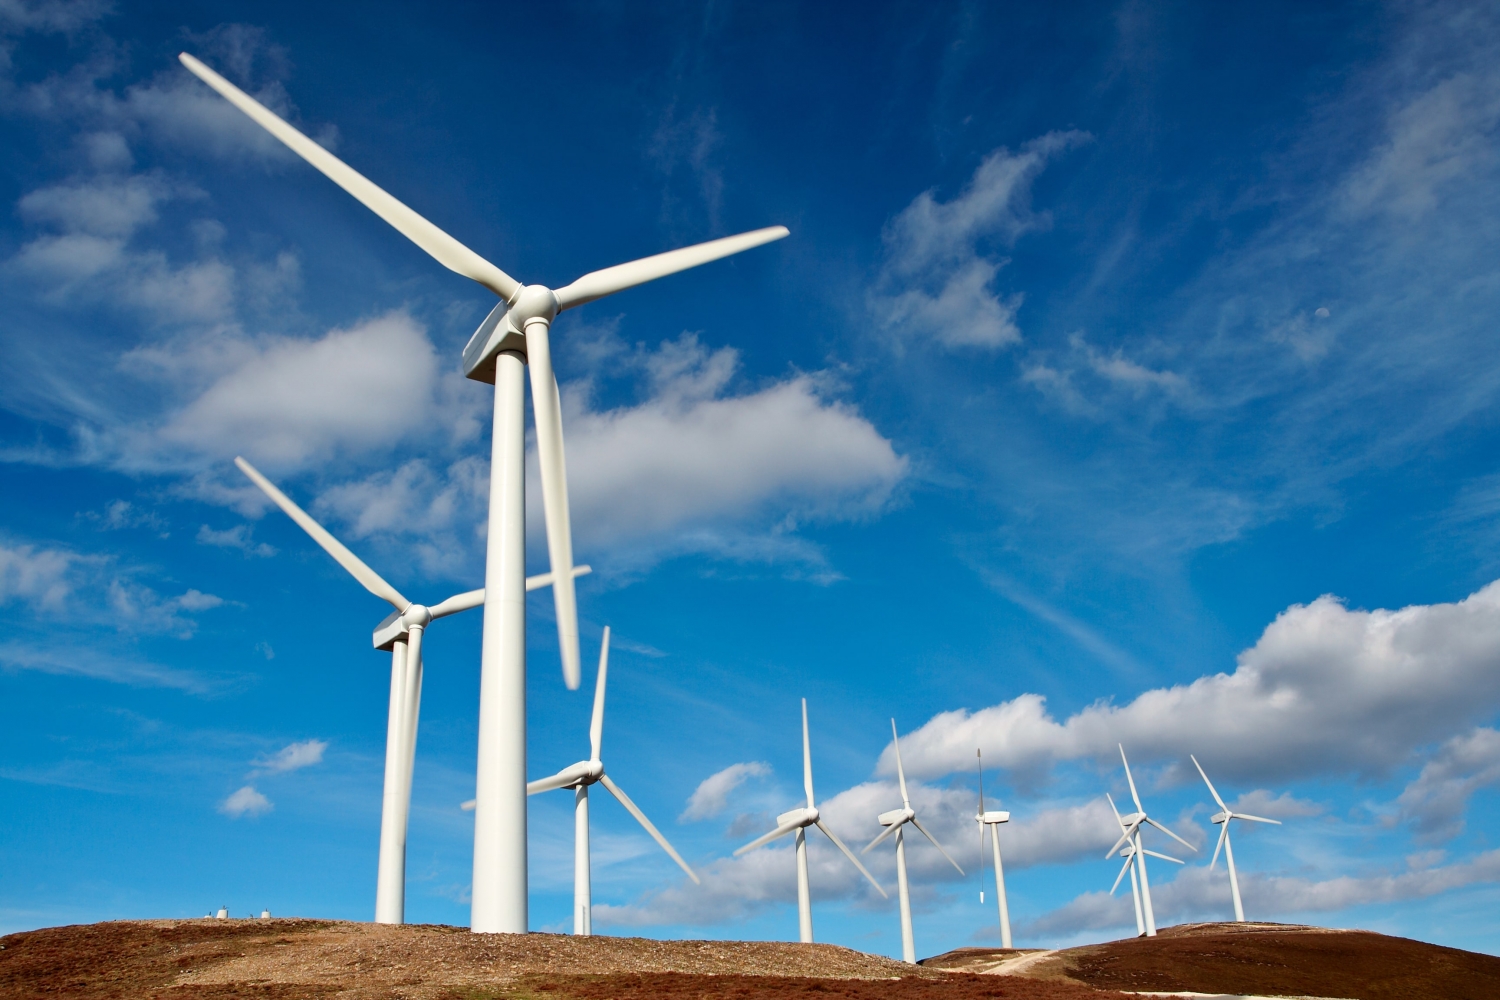 Đức đưa ra dự luật tăng tốc mở rộng năng lượng gió